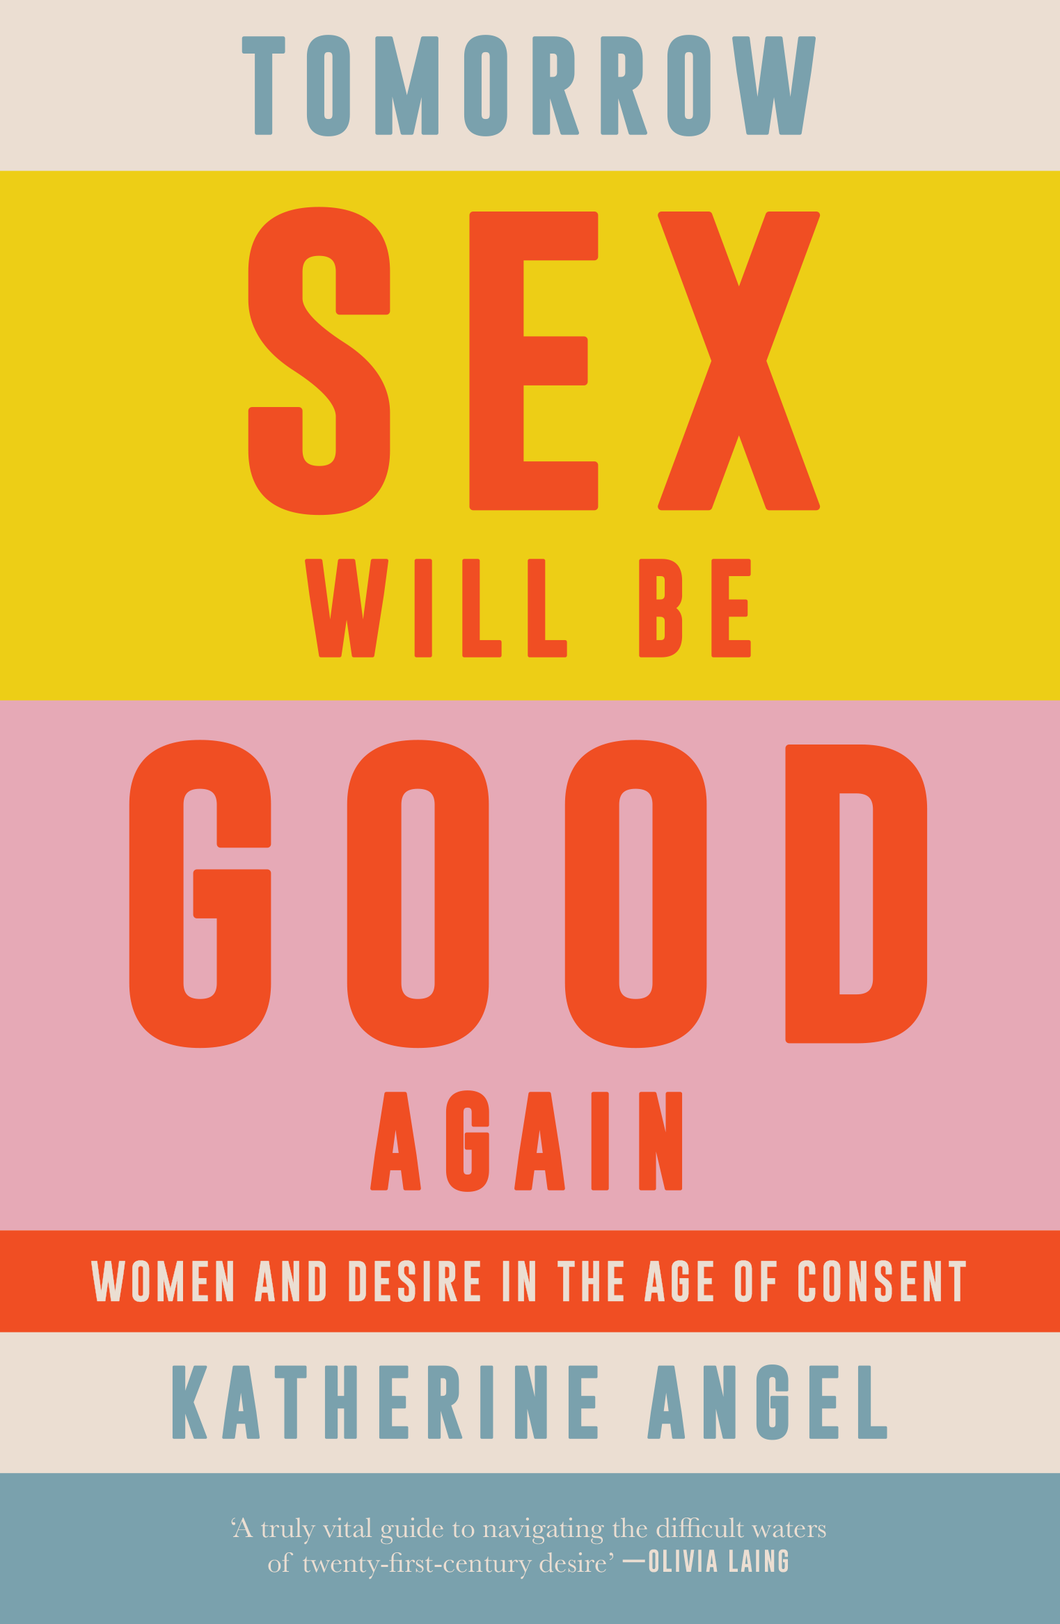 Tomorrow Sex Will Be Good Again : Women and Desire in the Age of Consent | Hardback ร้านหนังสือและสิ่งของ เป็นร้านหนังสือภาษาอังกฤษหายาก และร้านกาแฟ หรือ บุ๊คคาเฟ่ ตั้งอยู่สุขุมวิท กรุงเทพ